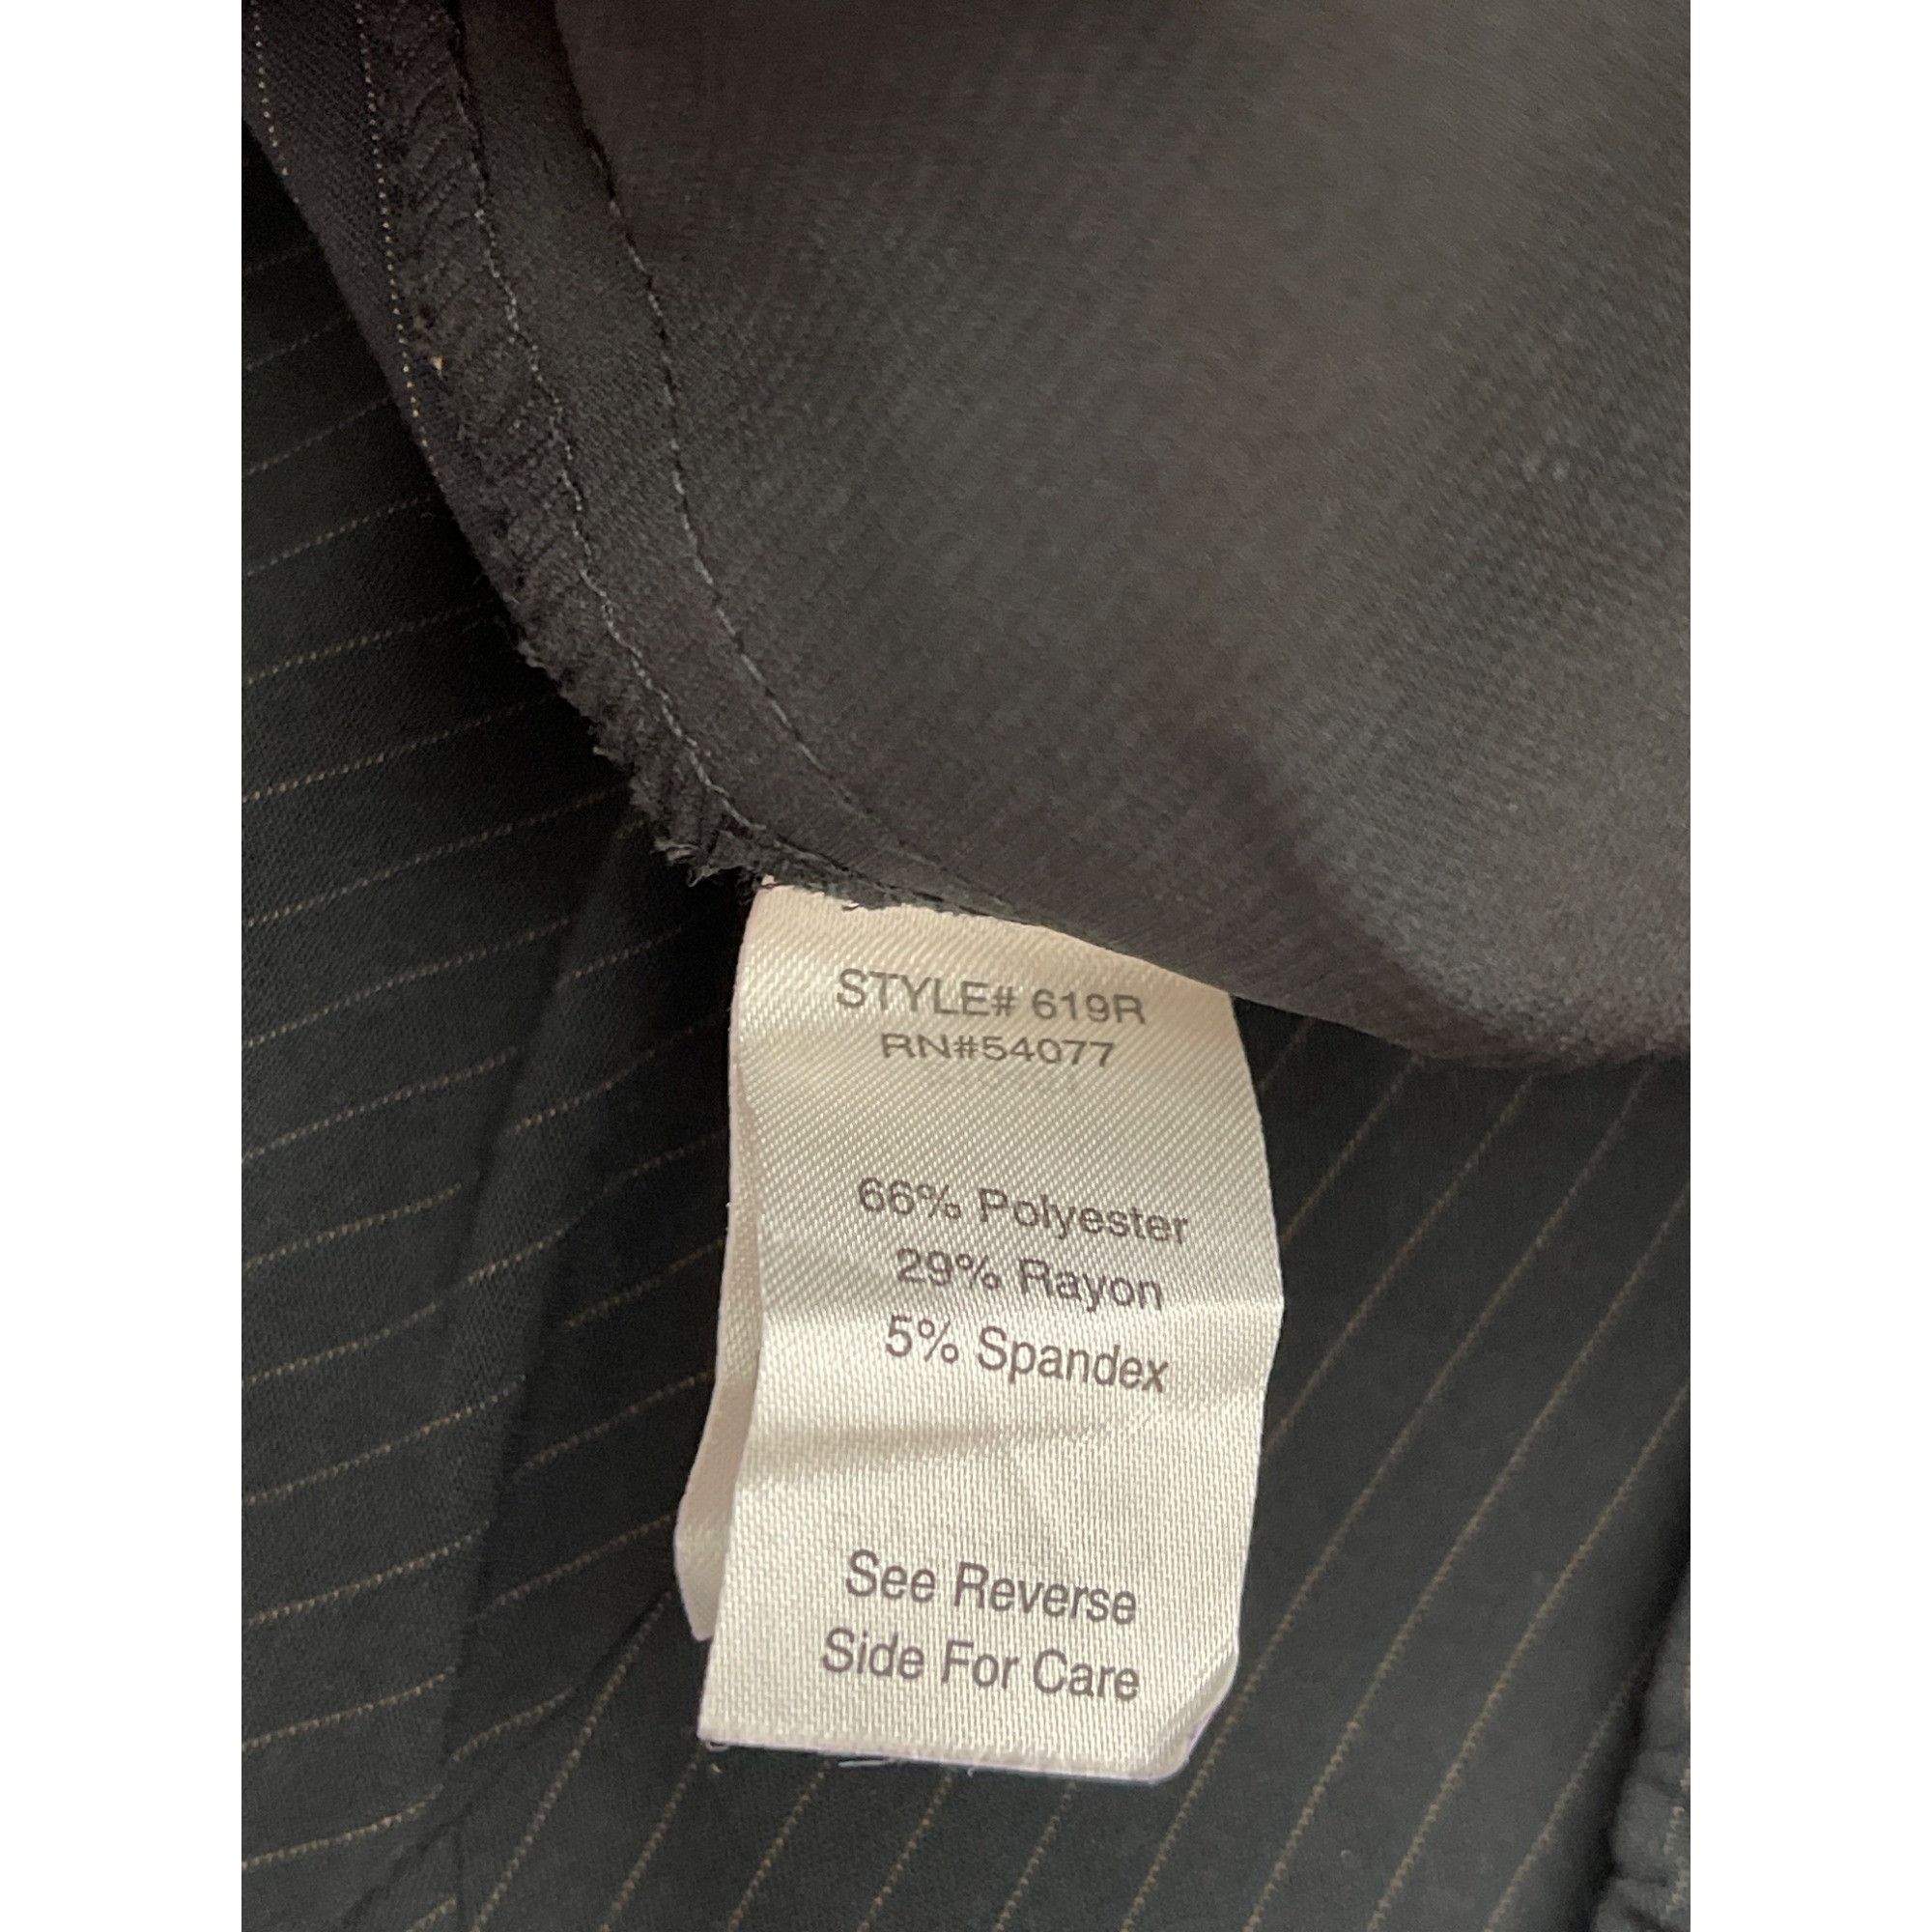 Other Cabi Black Pin Striped Pant 2 Pcs Suit Set Jacket 4 Pant 6 Size S / US 4 / IT 40 - 13 Thumbnail